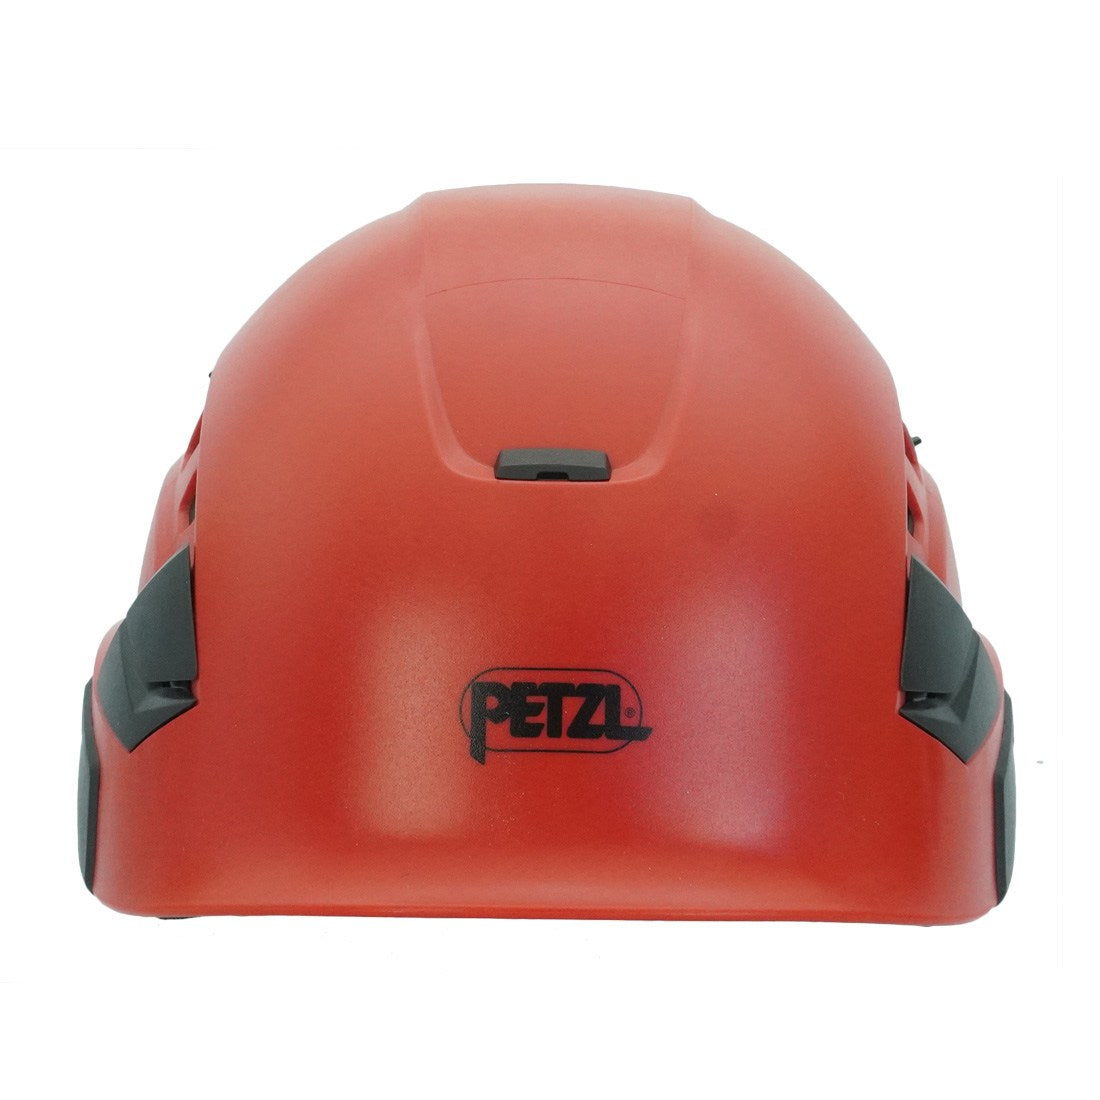 Red Petzl Vertex Vent Helmet Front View